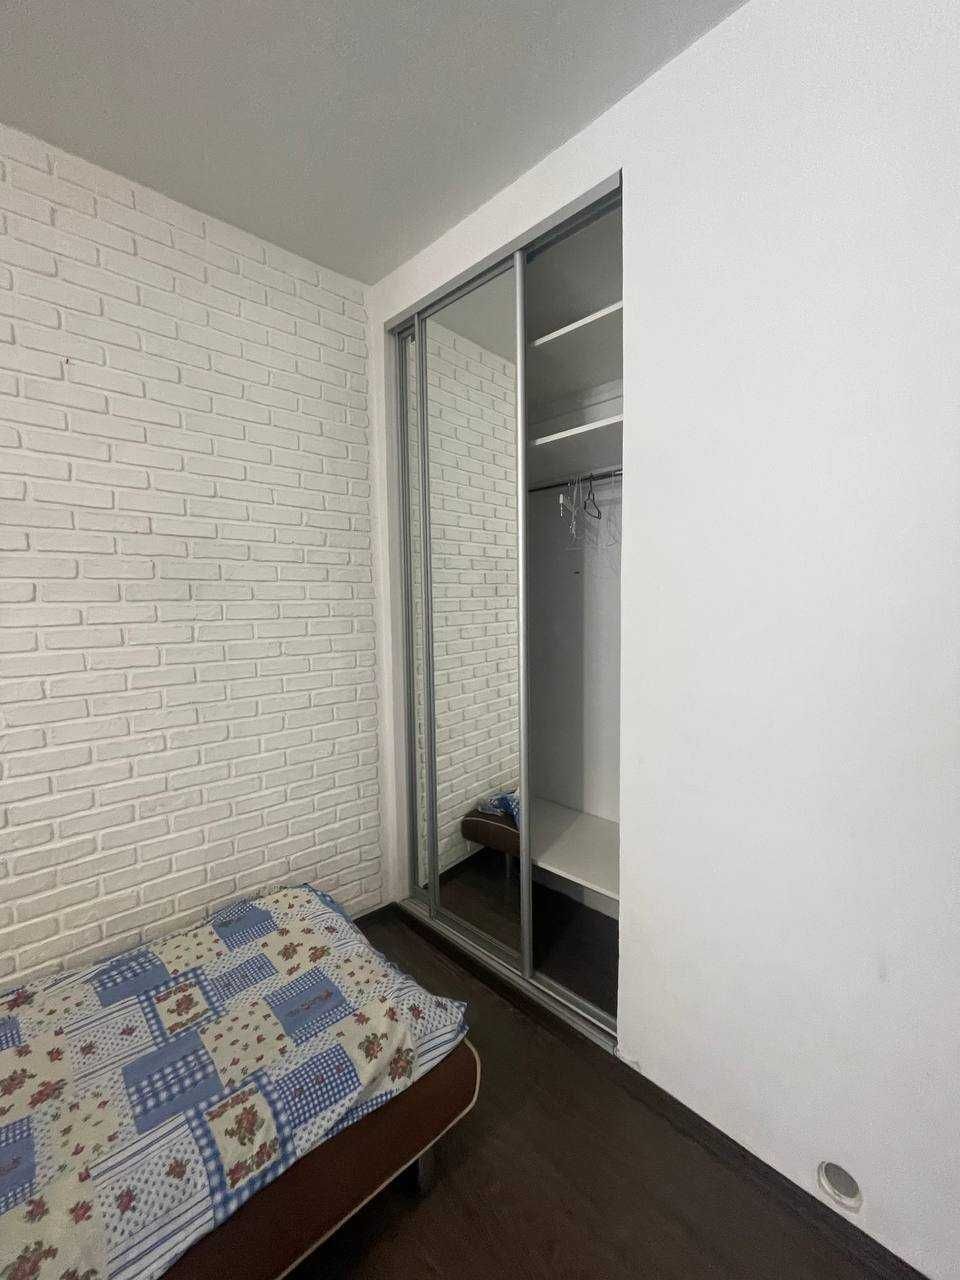 Продам 2 комнатную квартиру в крепкой сталинке